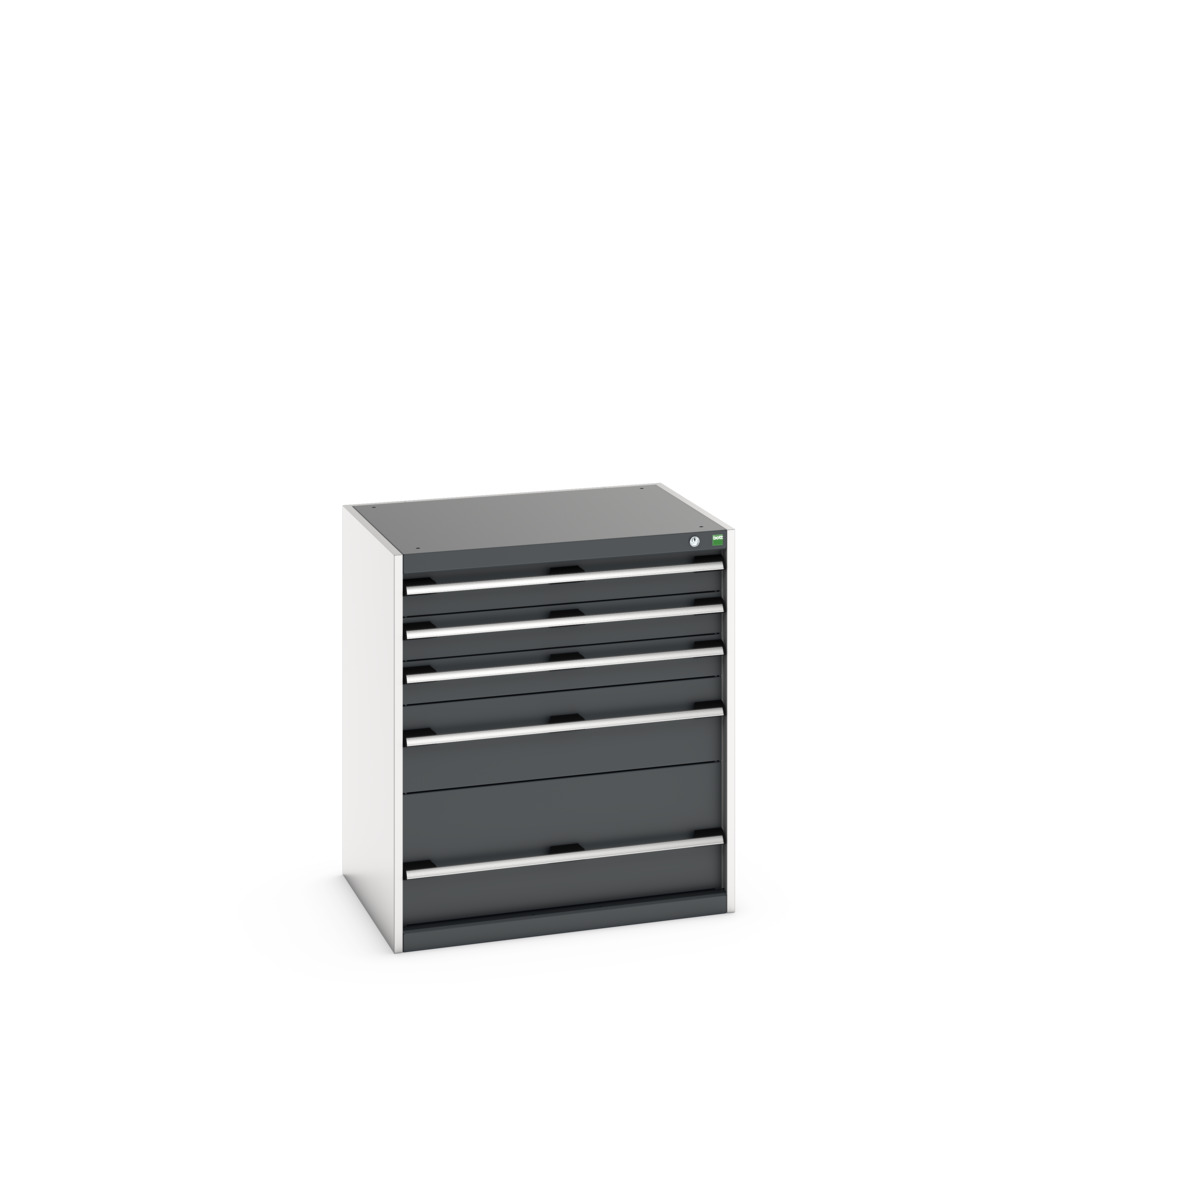 40020035.19V - cubio drawer cabinet